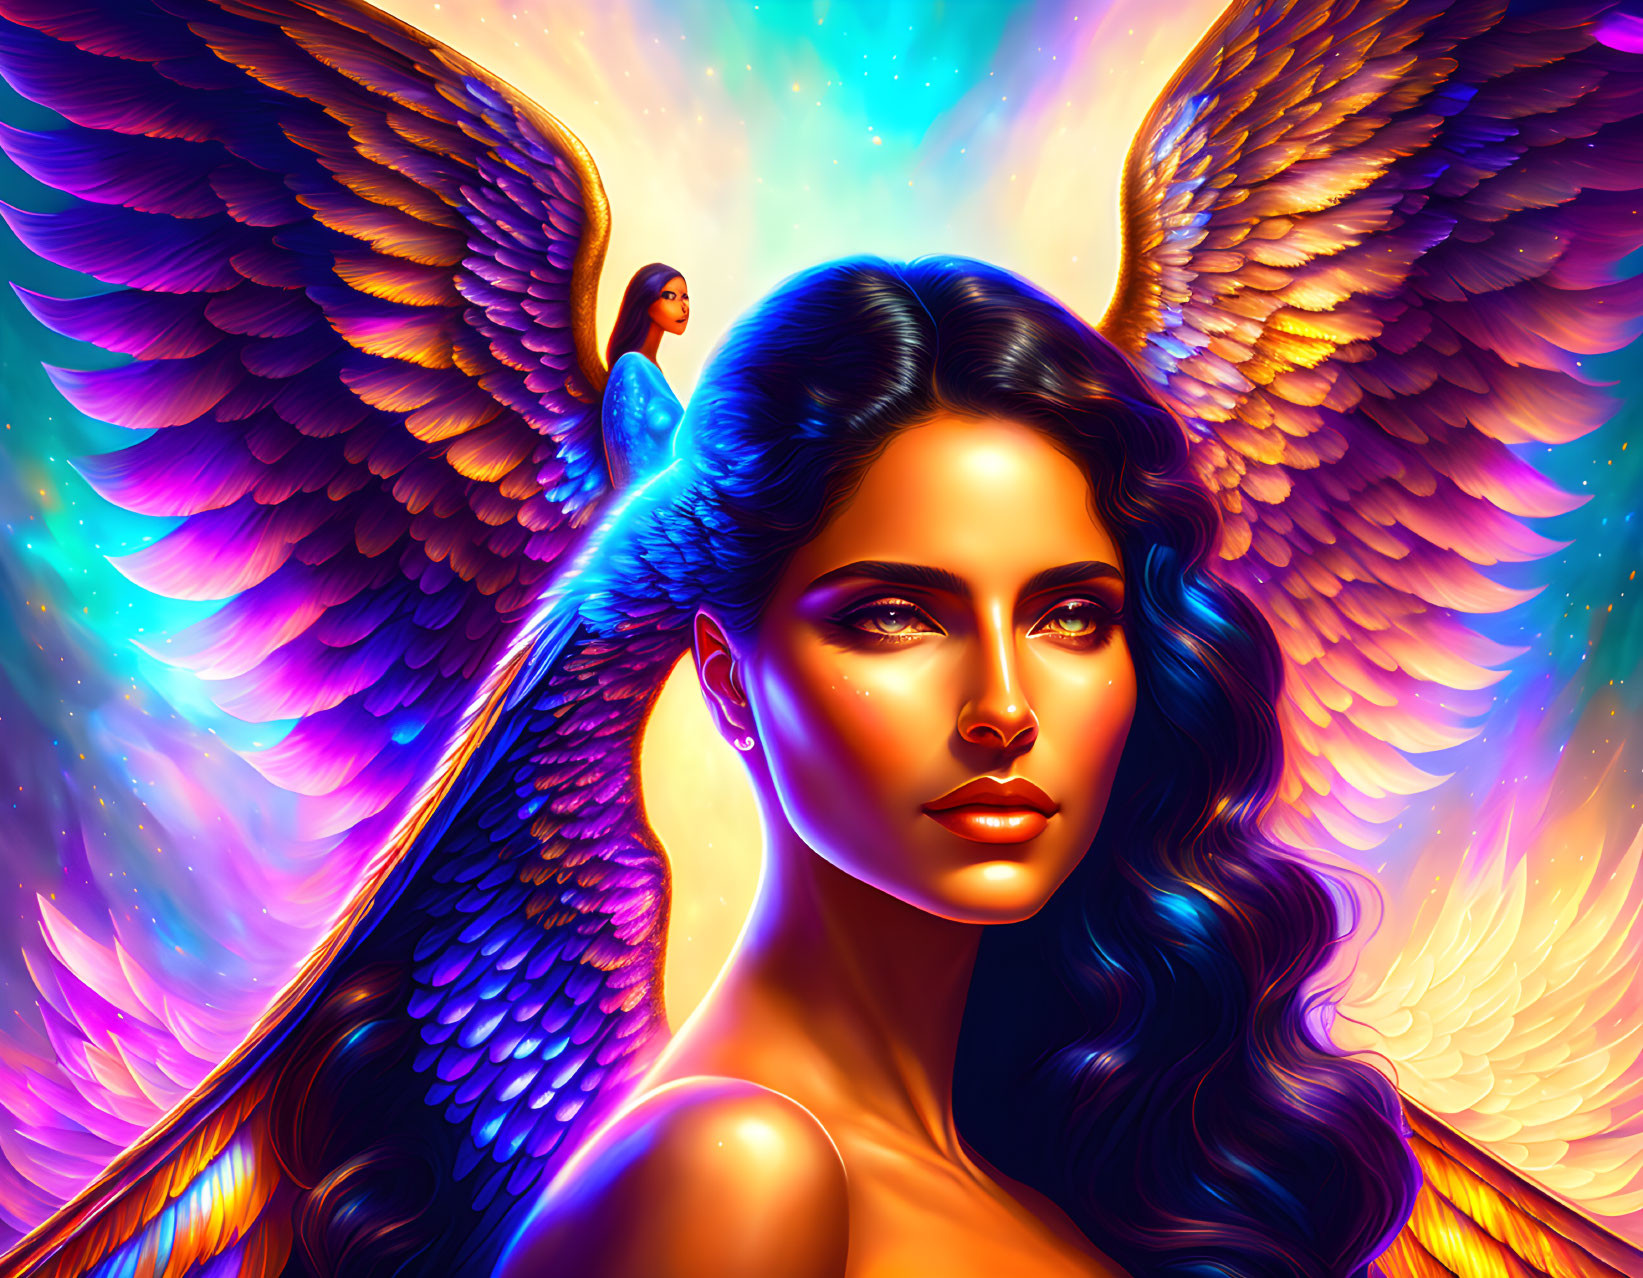 Digital art: Woman with blue angel wings in fiery glow, small figure on wing